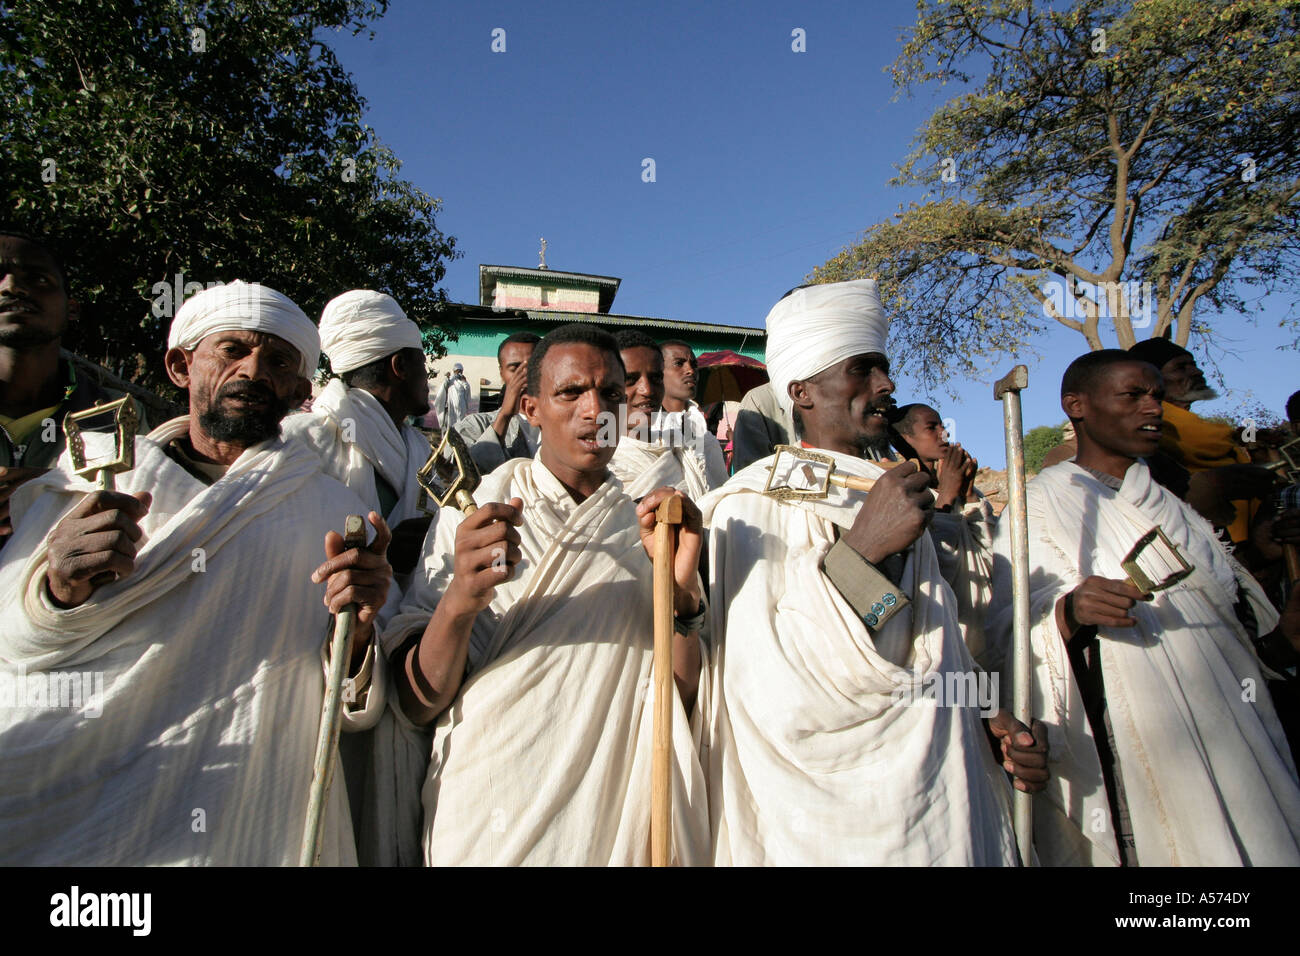 Jb1238 Etiopia musicisti kidana merhet chiesa tigray africa religione ortodossa cristianesimo festival musica danza Foto Stock